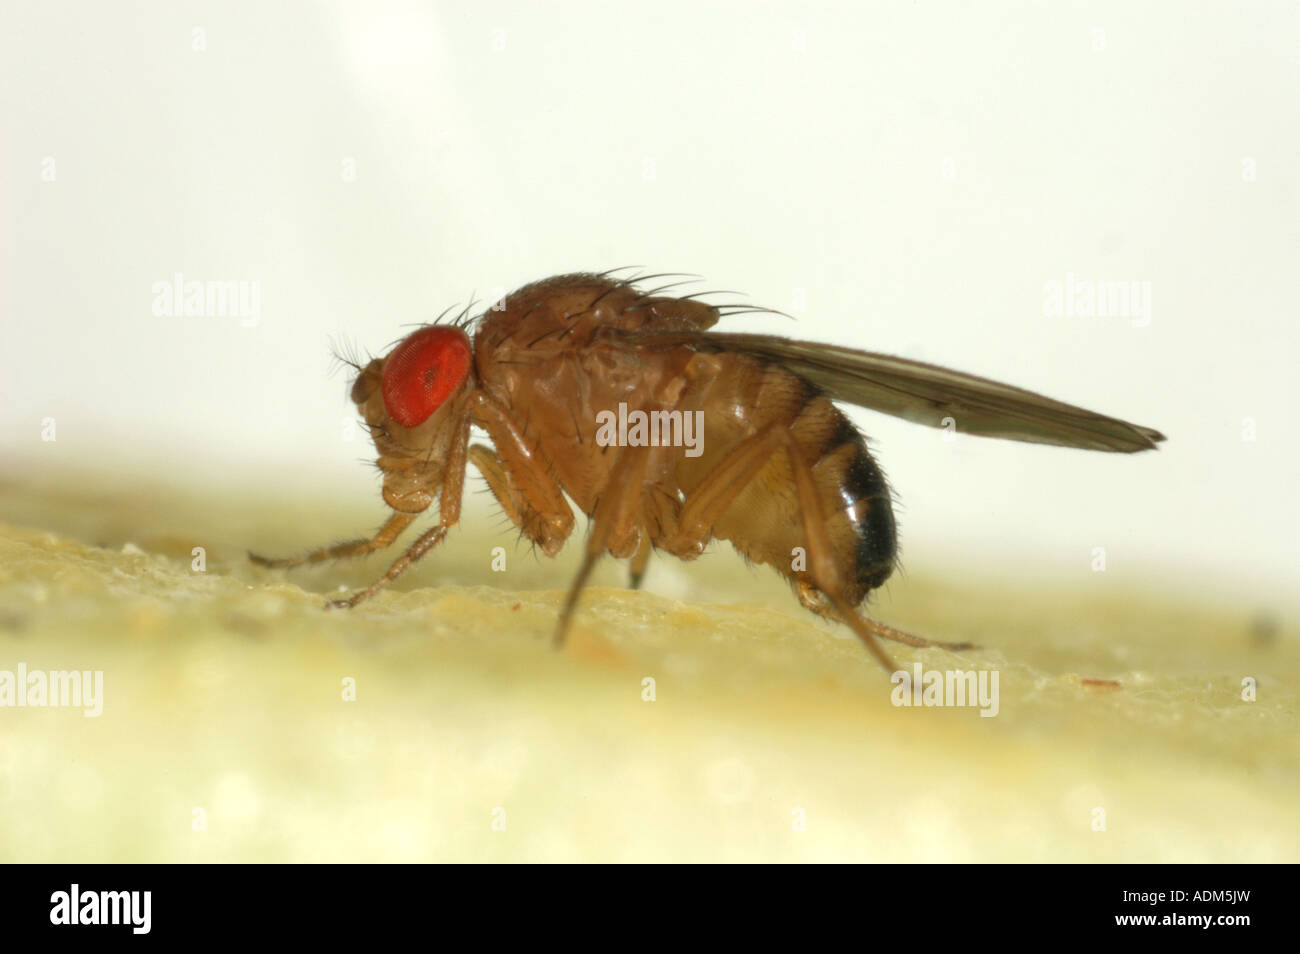 Adulto mosca della frutta drosophila melanogaster un genere utilizzato per esperimenti a causa del loro rapido ciclo di allevamento Foto Stock